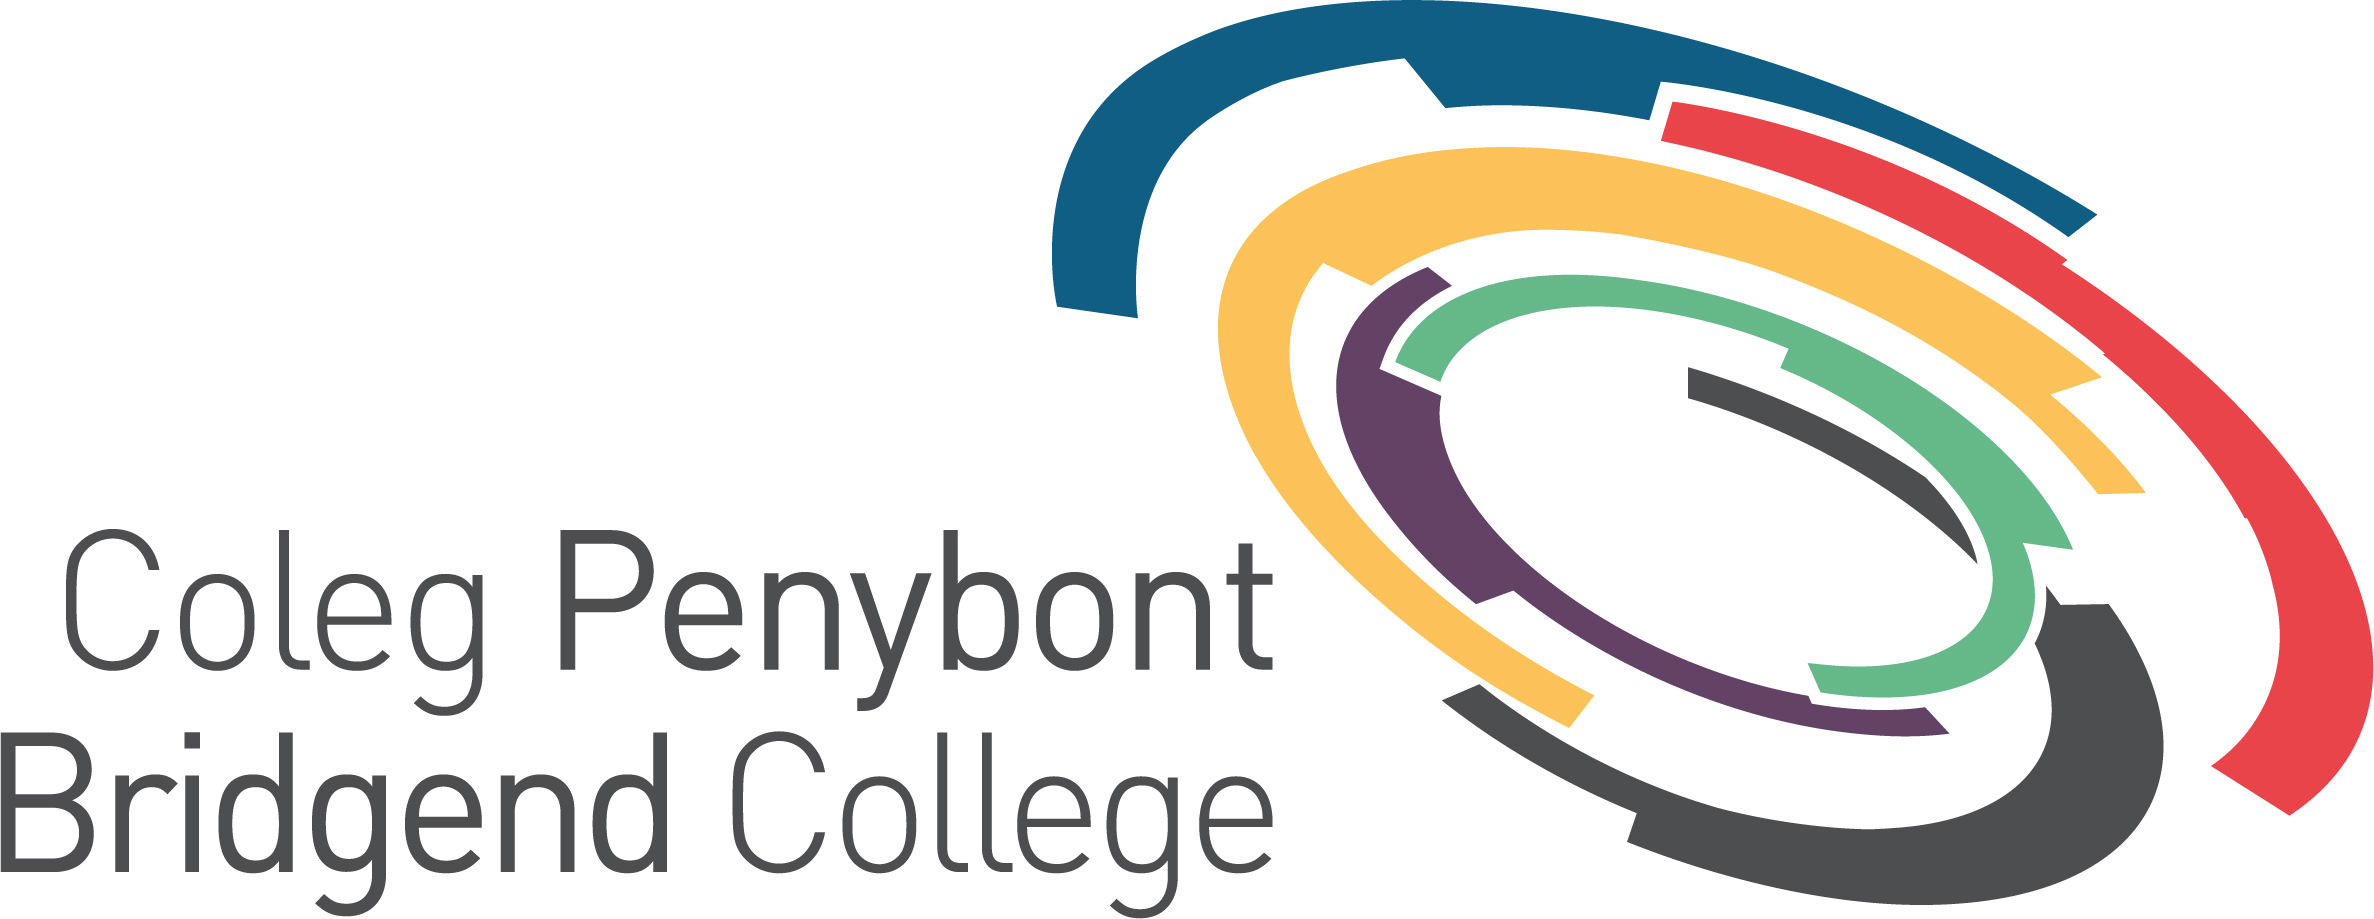 Logo Bridgend College